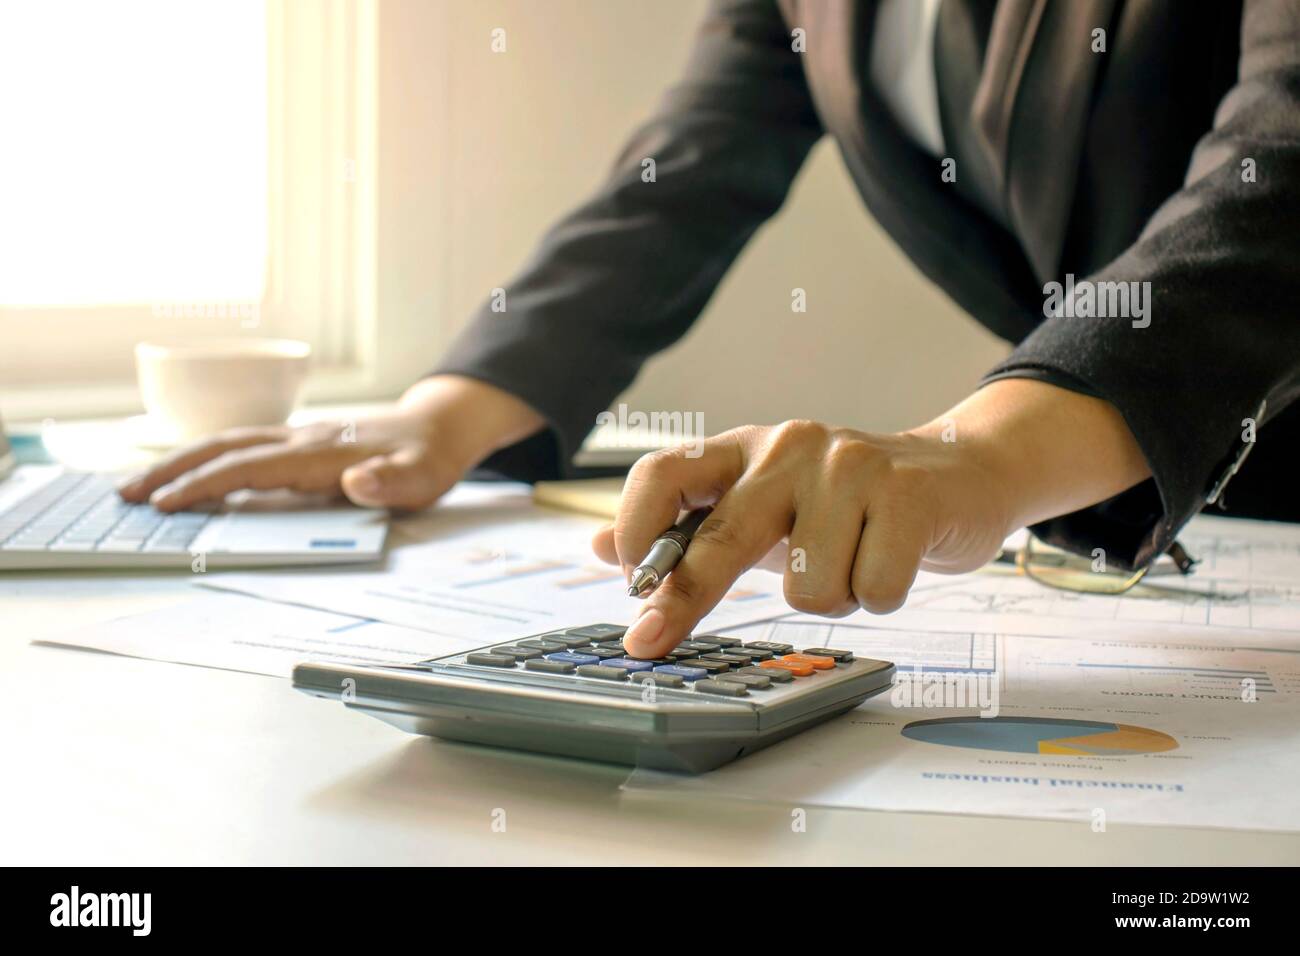 Les hommes d'affaires pressent une calculatrice pour calculer le concept d'information d'affaires sur la gestion financière et le financement. Banque D'Images